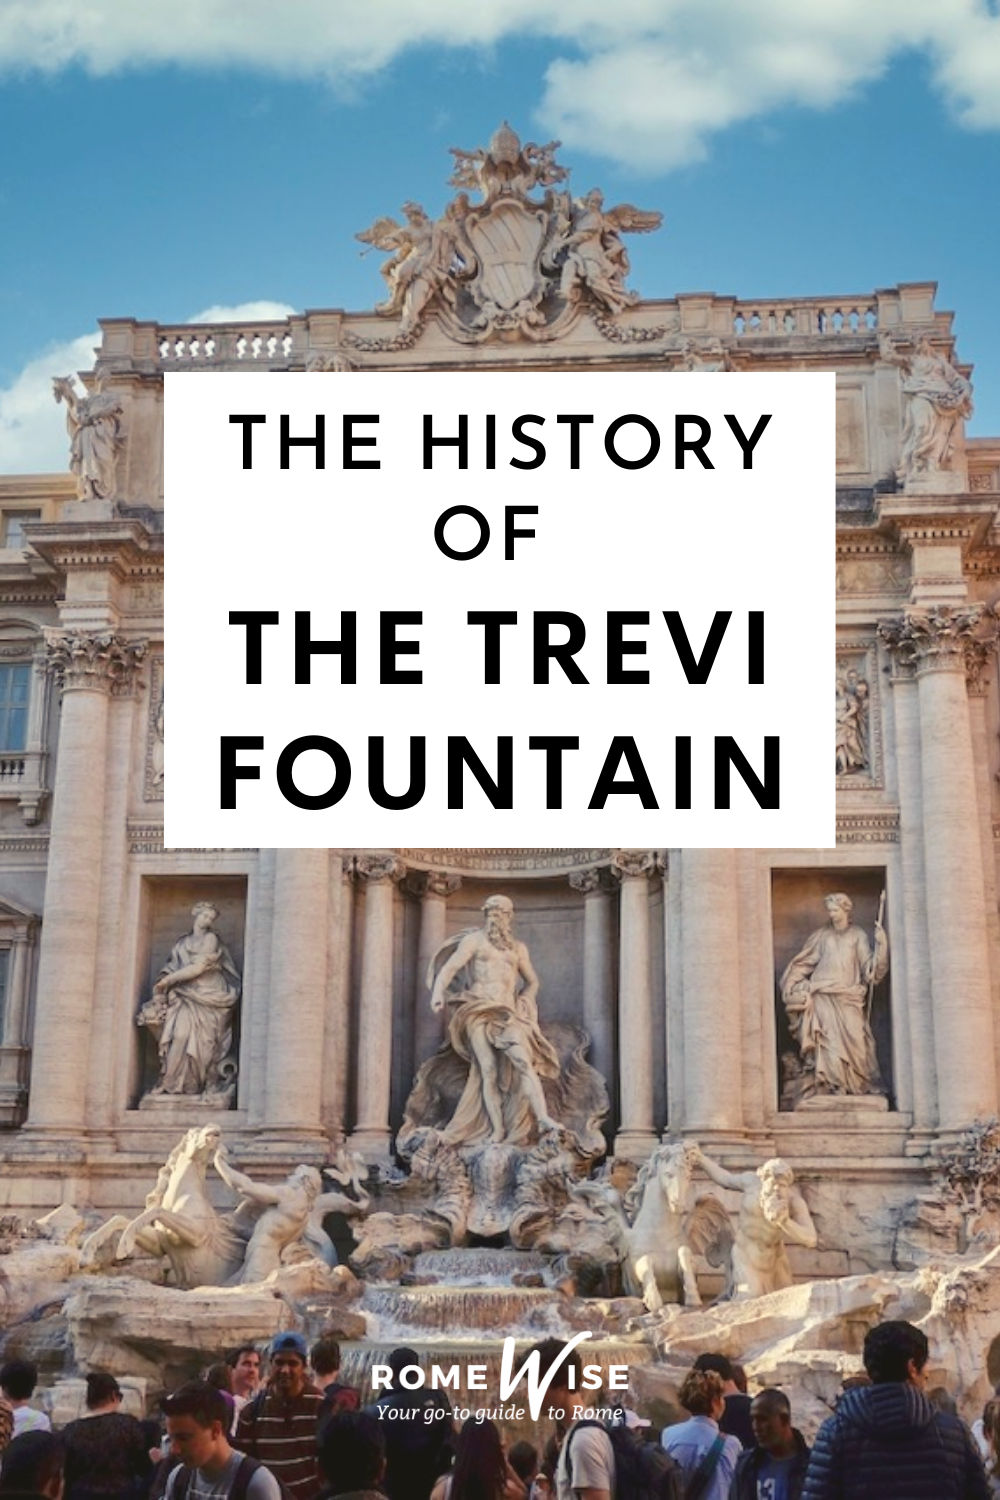 trevi fountain restored - dawn